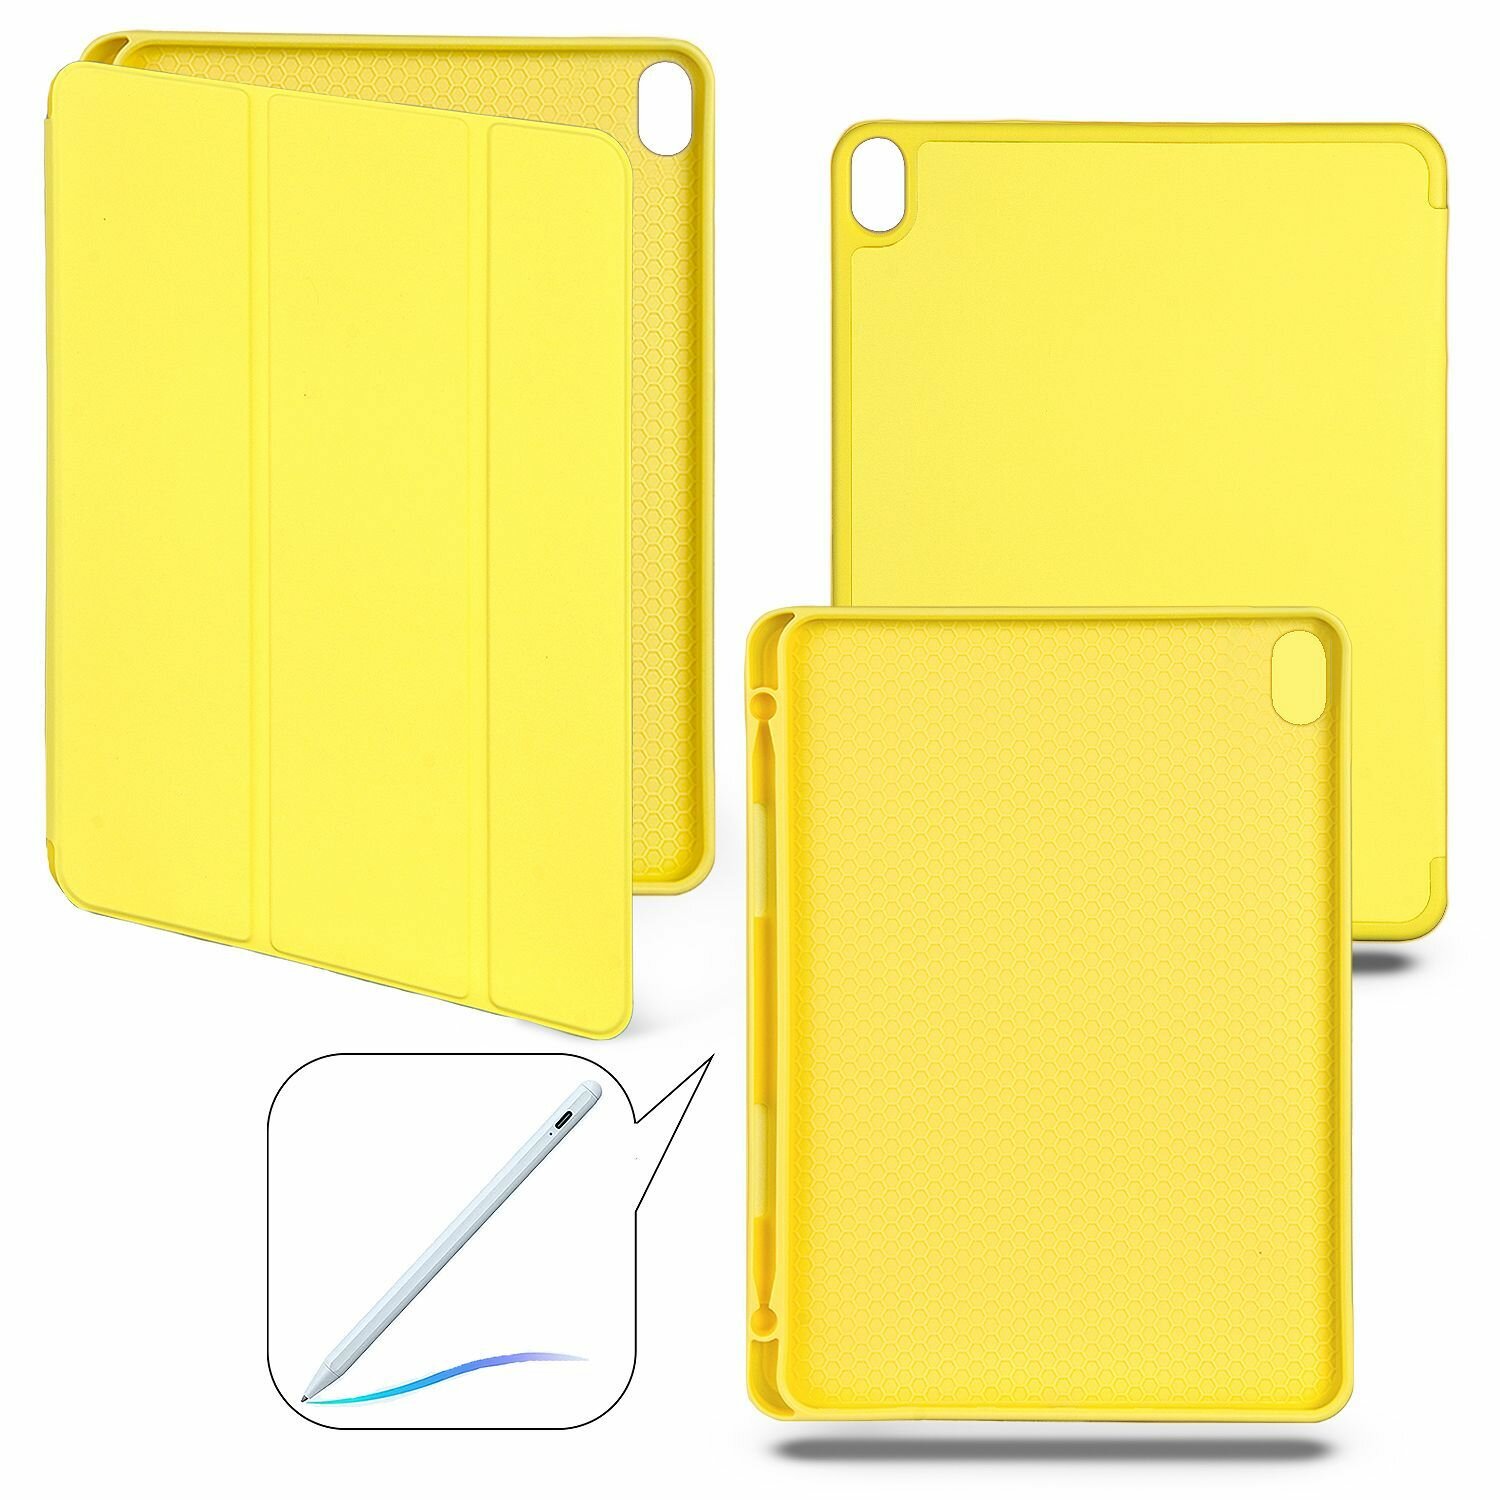 Чехол-книжка для iPad Air 4 (10.9" 2020) / iPad Air 5 (10.9" 2022) с отделением для стилуса желтый